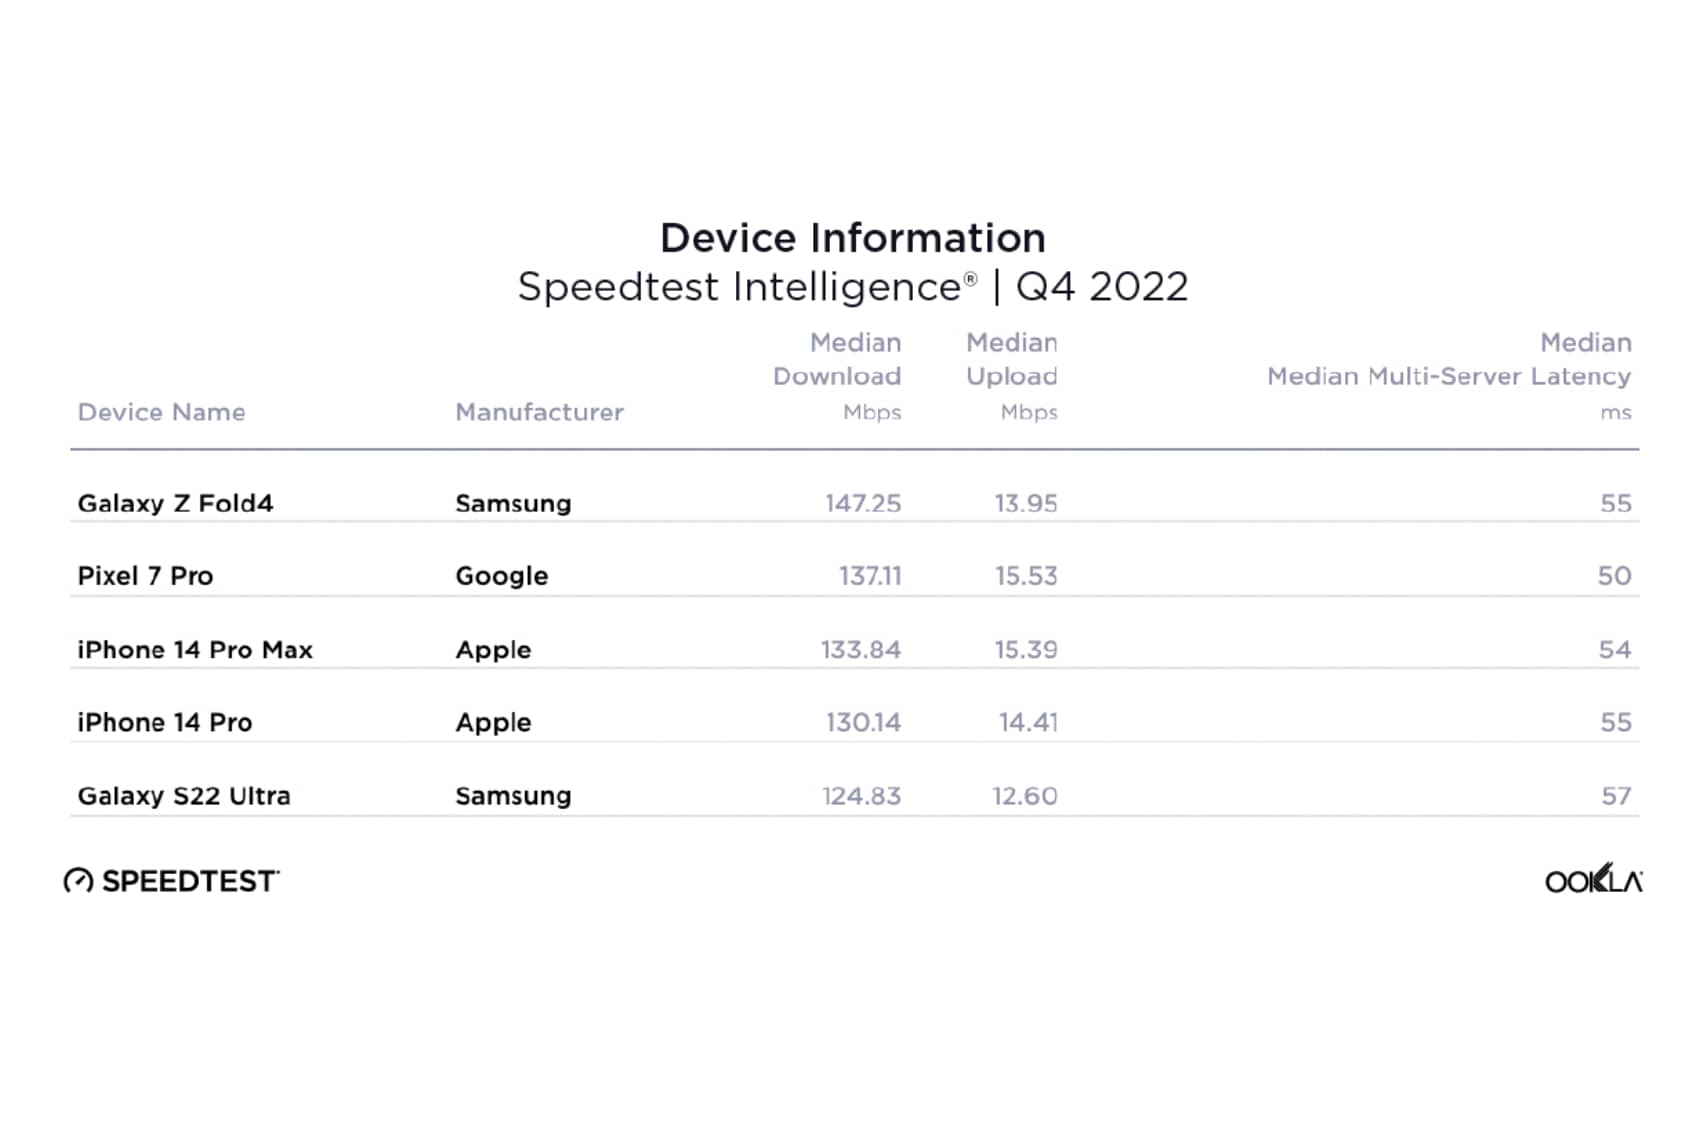 Gráfico Ookla Speedtest de smartphones mais rápidos no quarto trimestre de 2022.